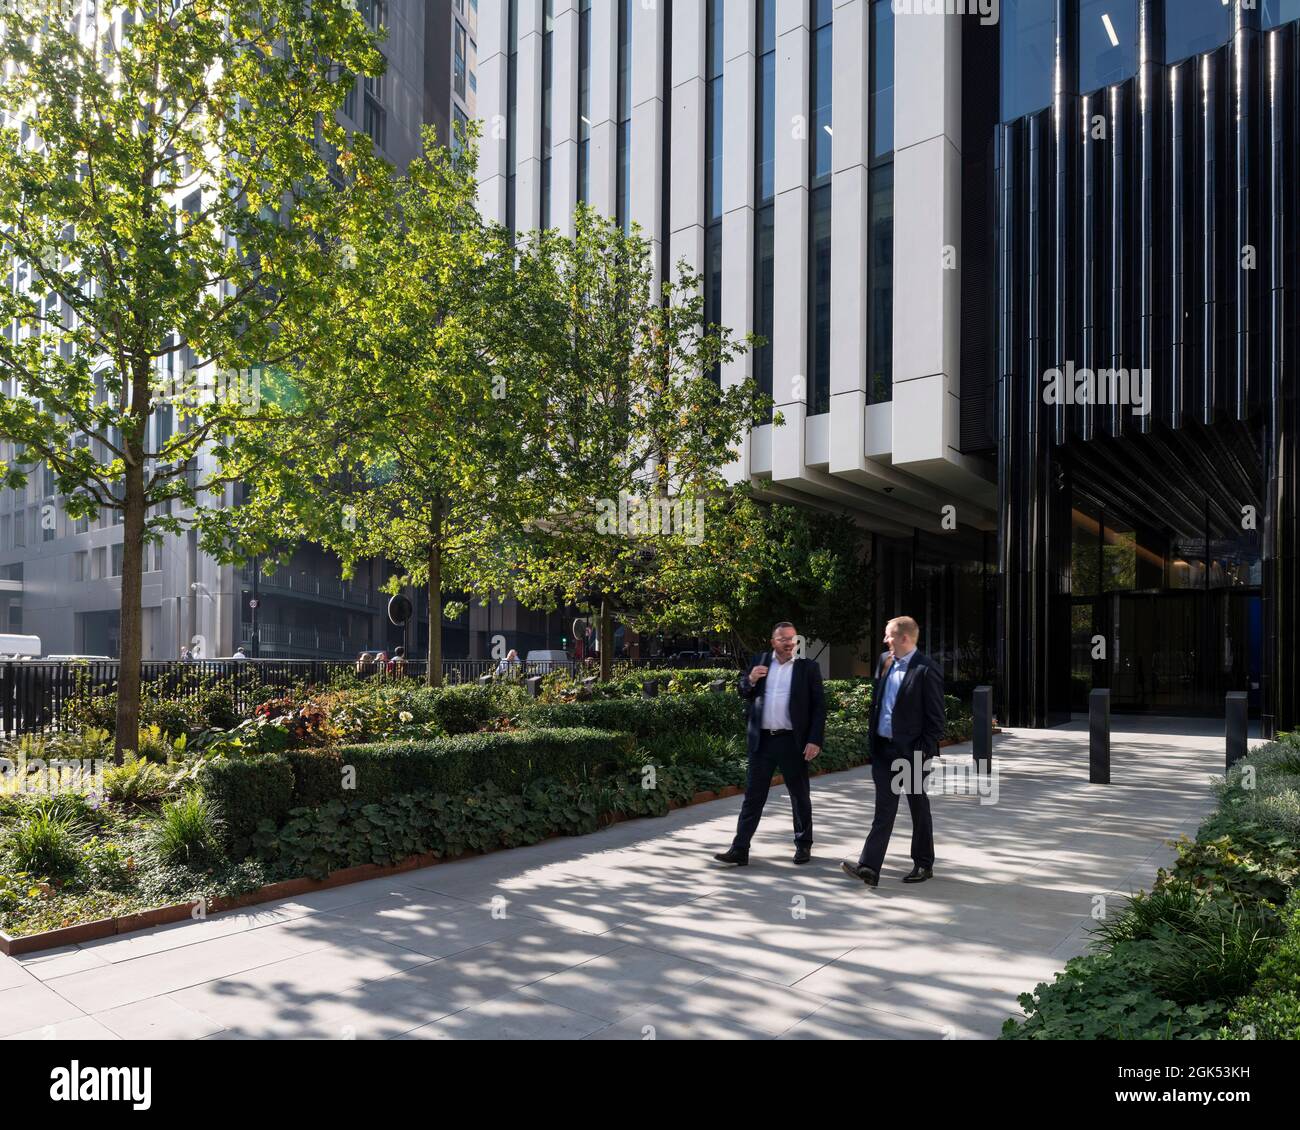 Außenanlagen und Eingang zu Gebäude 2. London Wall Place, London, Großbritannien. Architekt: Make Ltd, 2019. Stockfoto